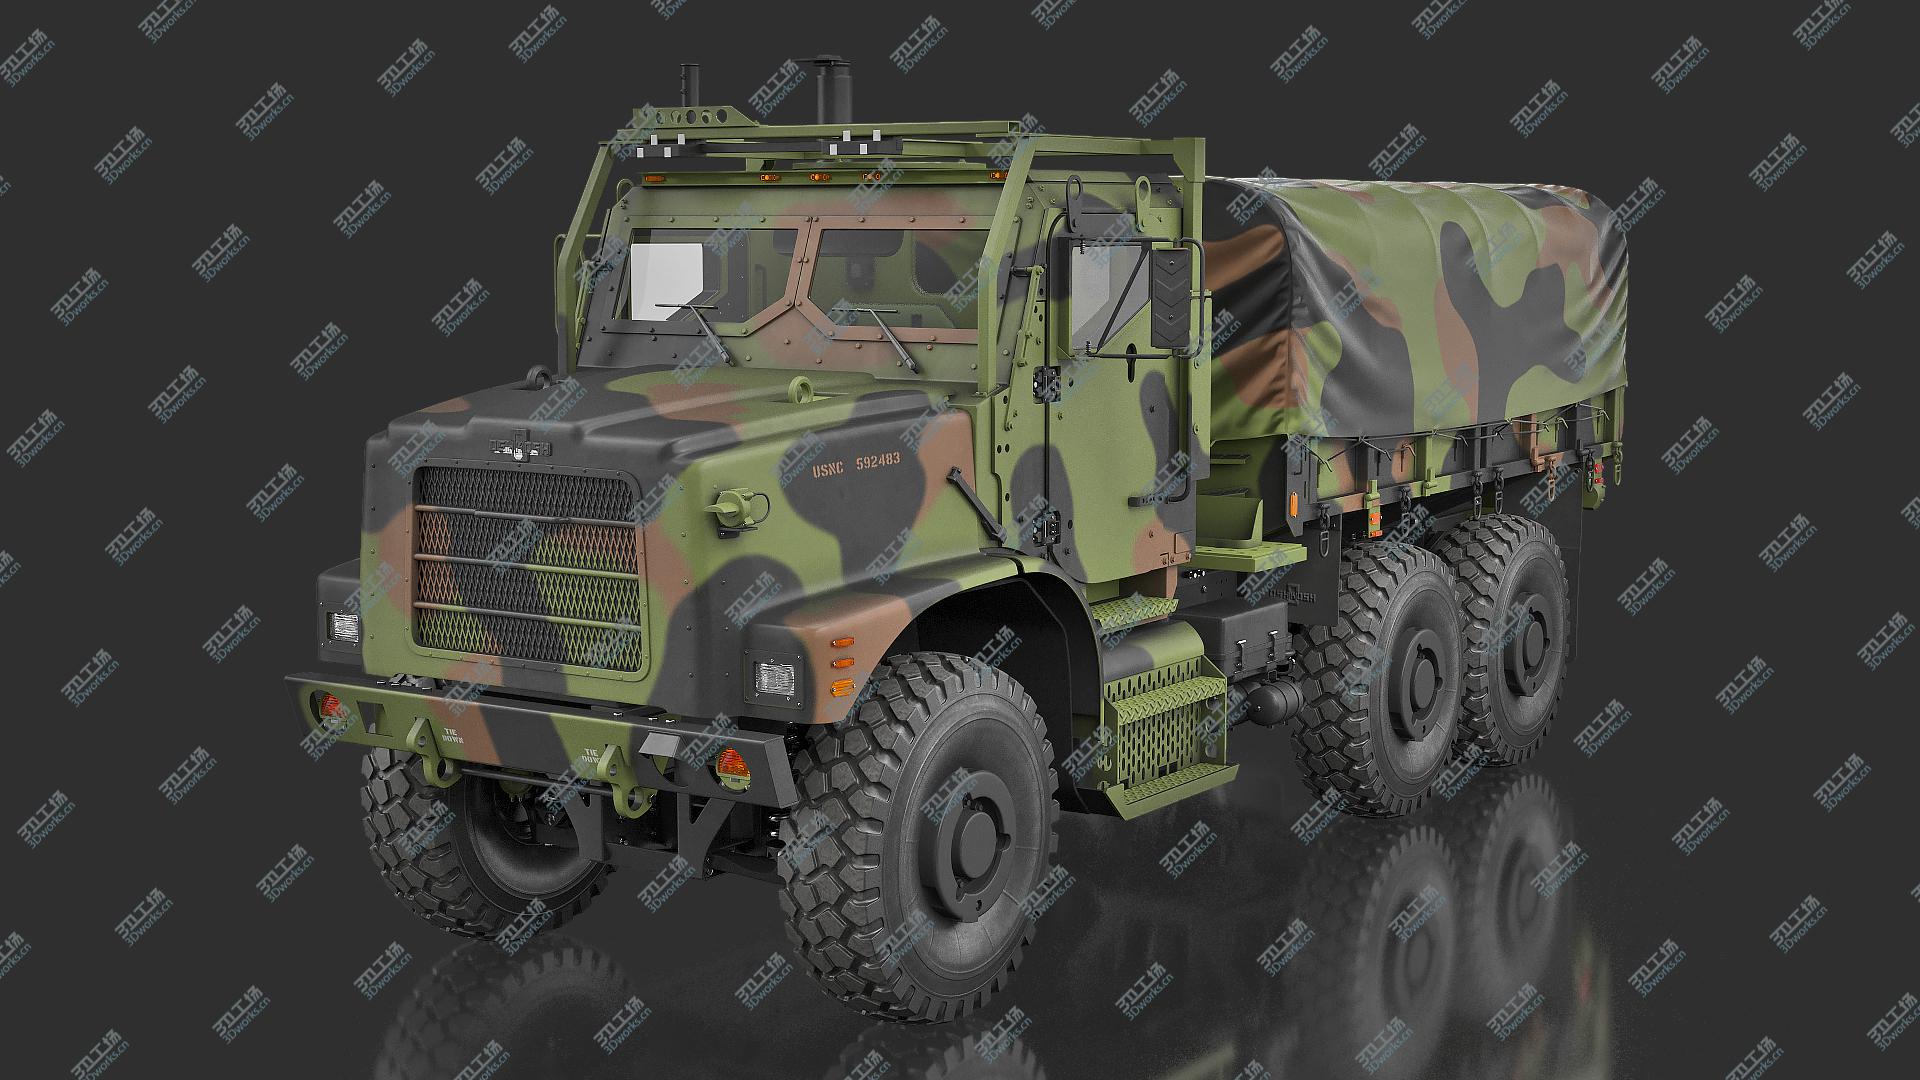 images/goods_img/20210319/Cargo Truck OshKosh MTVR MK23 with Tent model/1.jpg